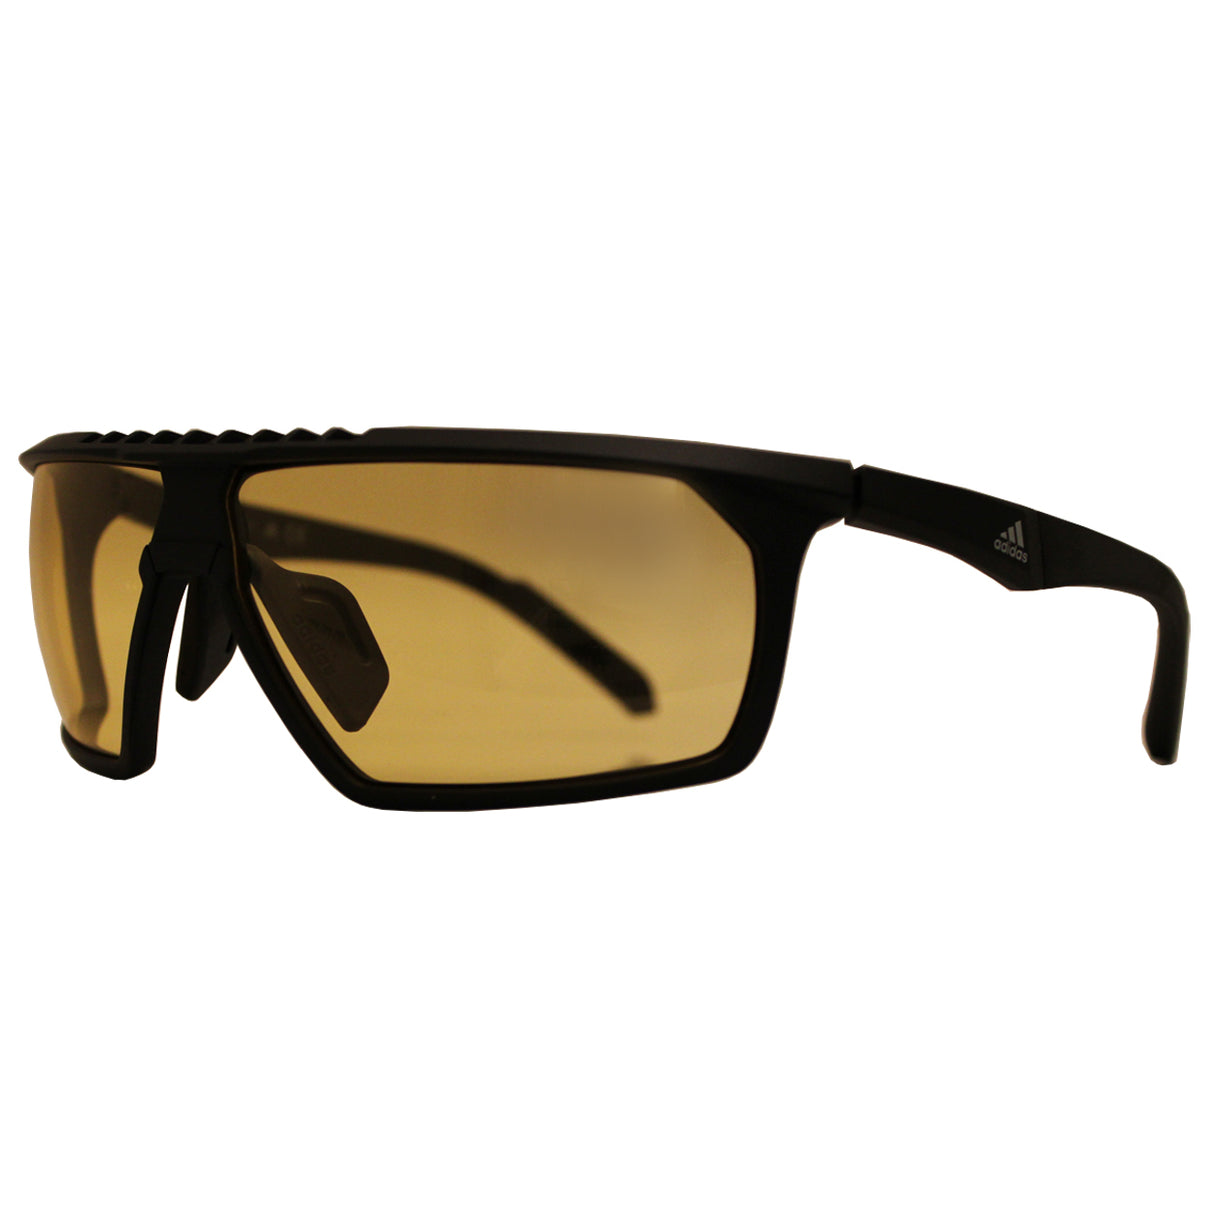 Adidas Golf Men's SP0030 Full Rim Sport Sunglasses